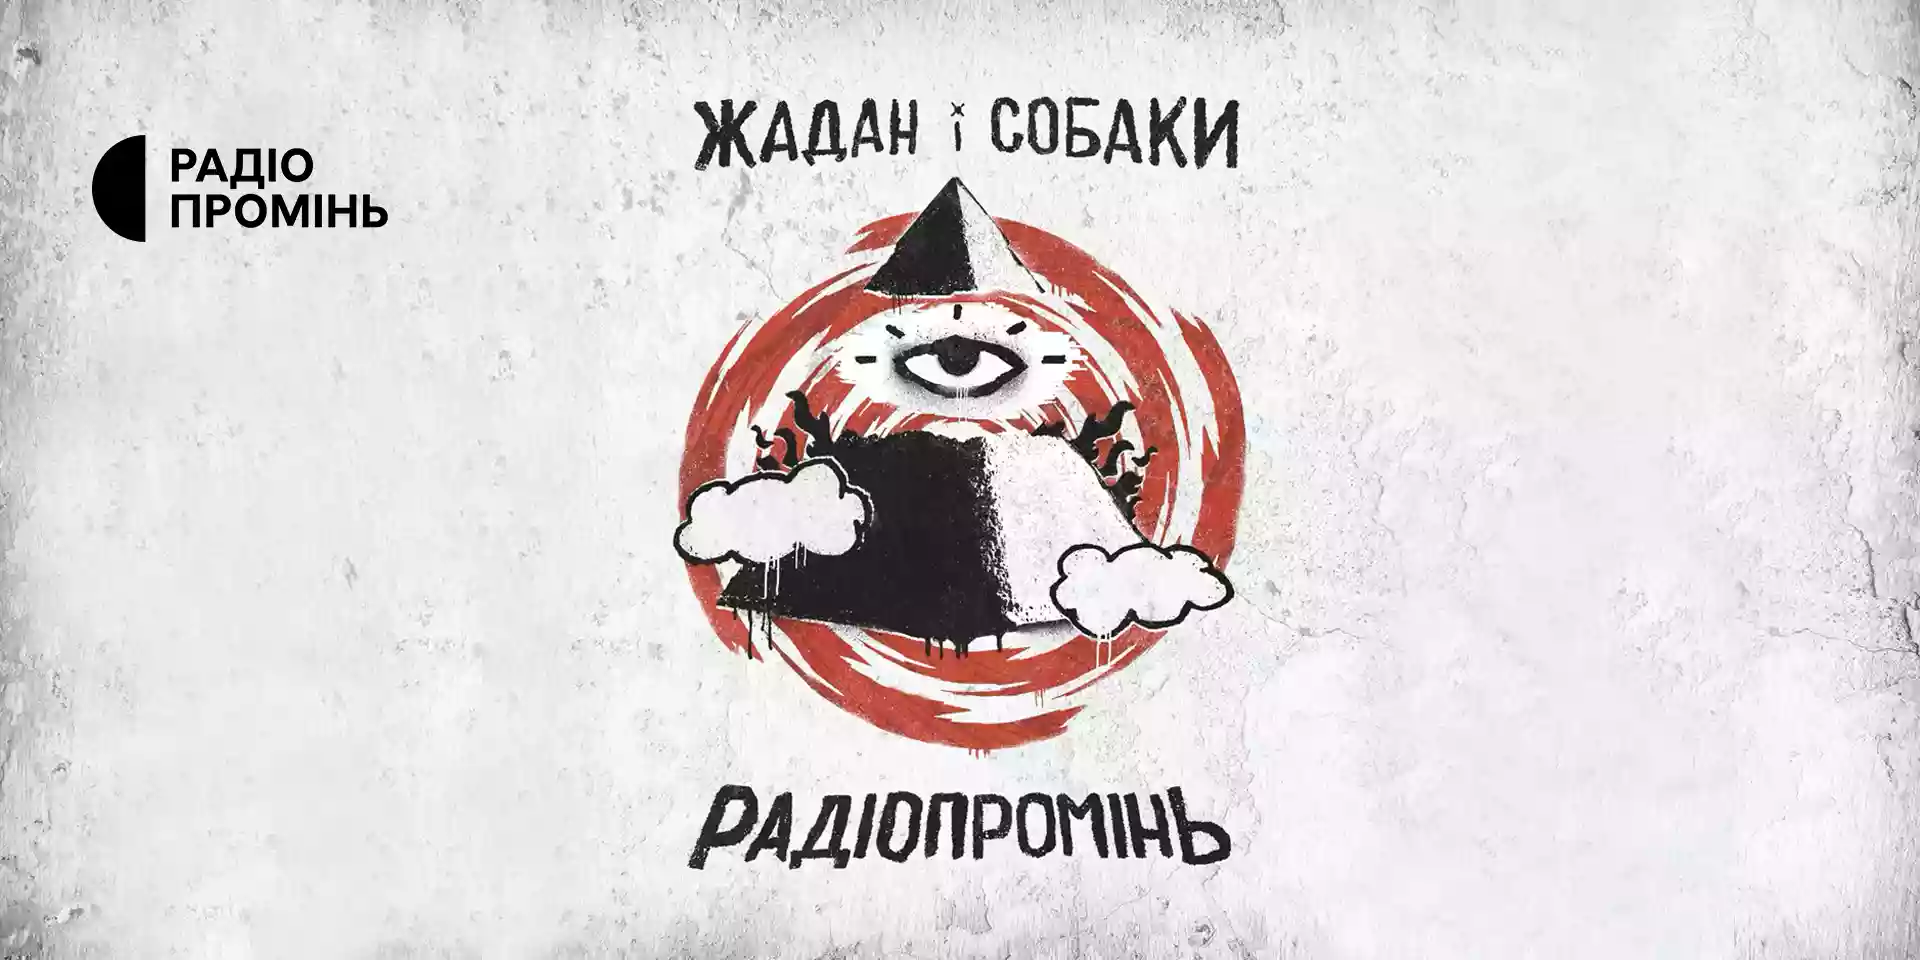 Гурт «Жадан і Собаки» назвав новий альбом на честь радіо «Промінь»